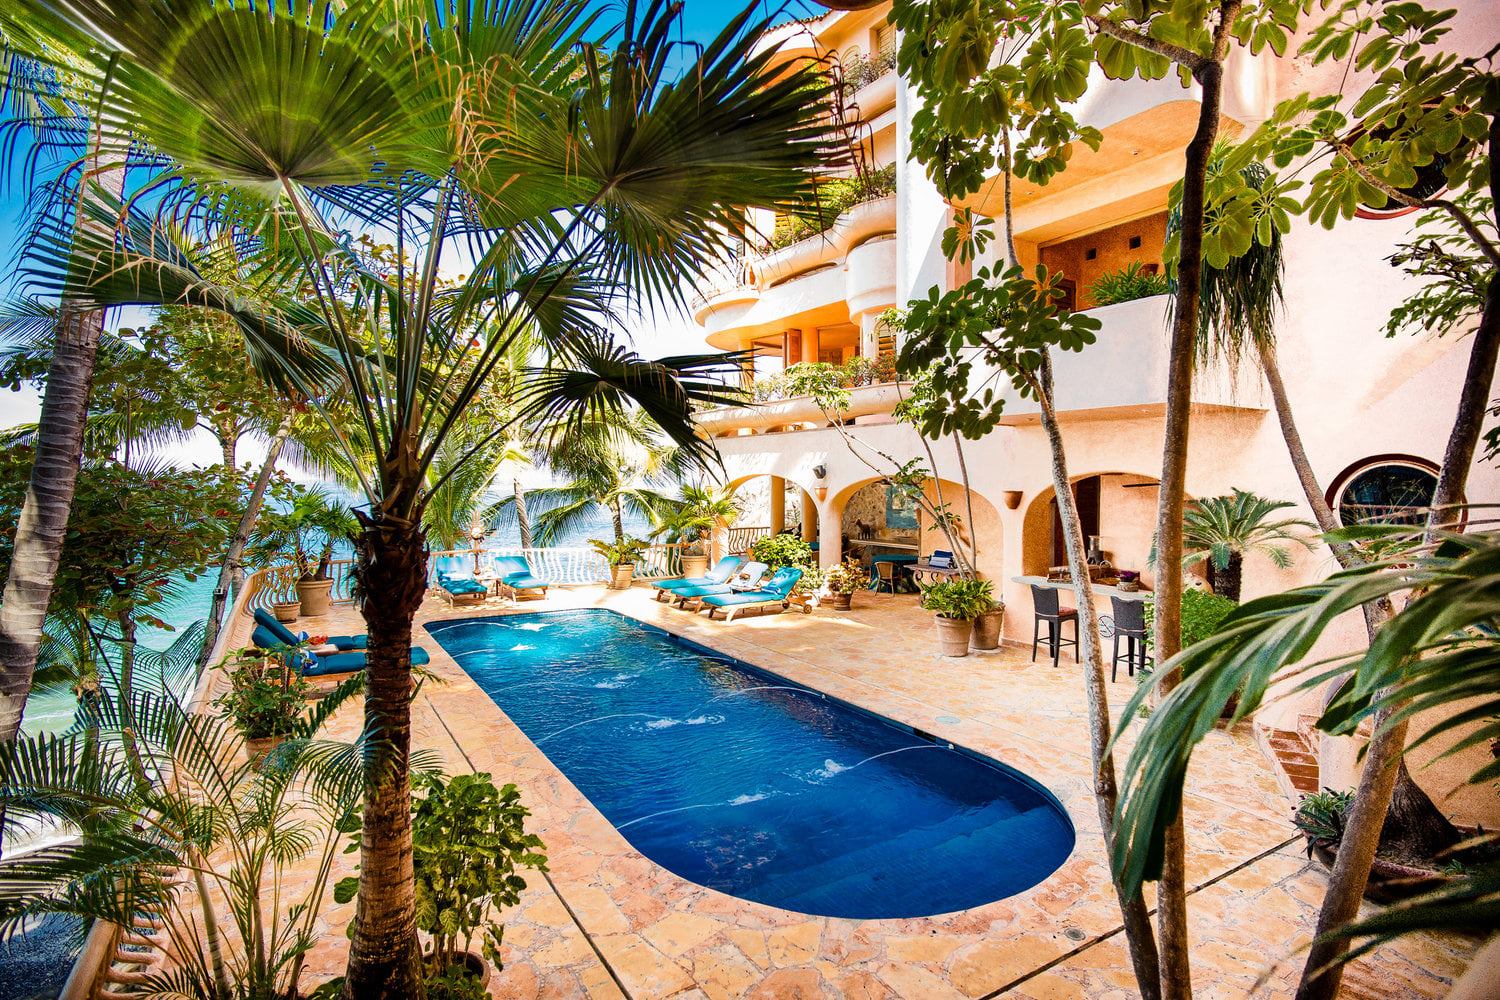 Vacation Vallarta Puerto Vallarta Mexican Riviera Luxury Villa Rental 7 Bedroom 9 Baths